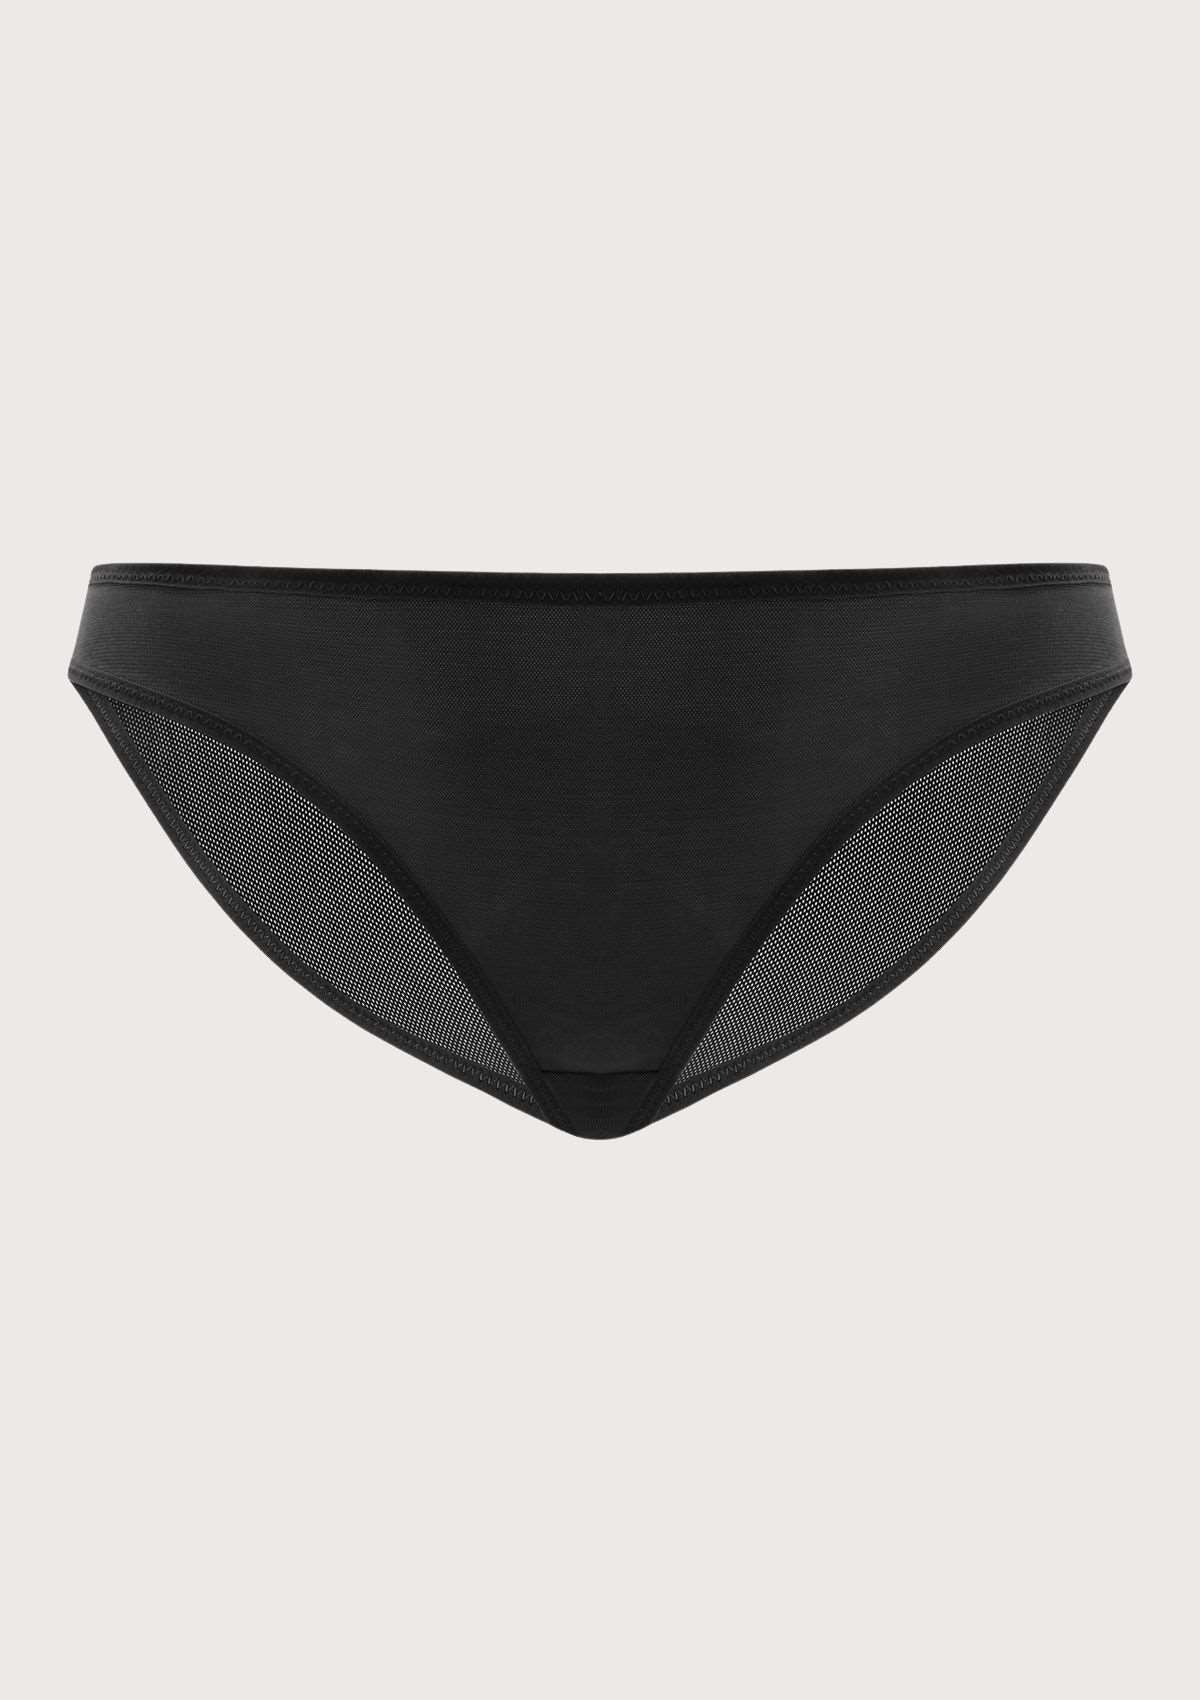 HSIA Billie Smooth Sheer Mesh Lightweight Soft Comfy Bikini Underwear - XXL / Black